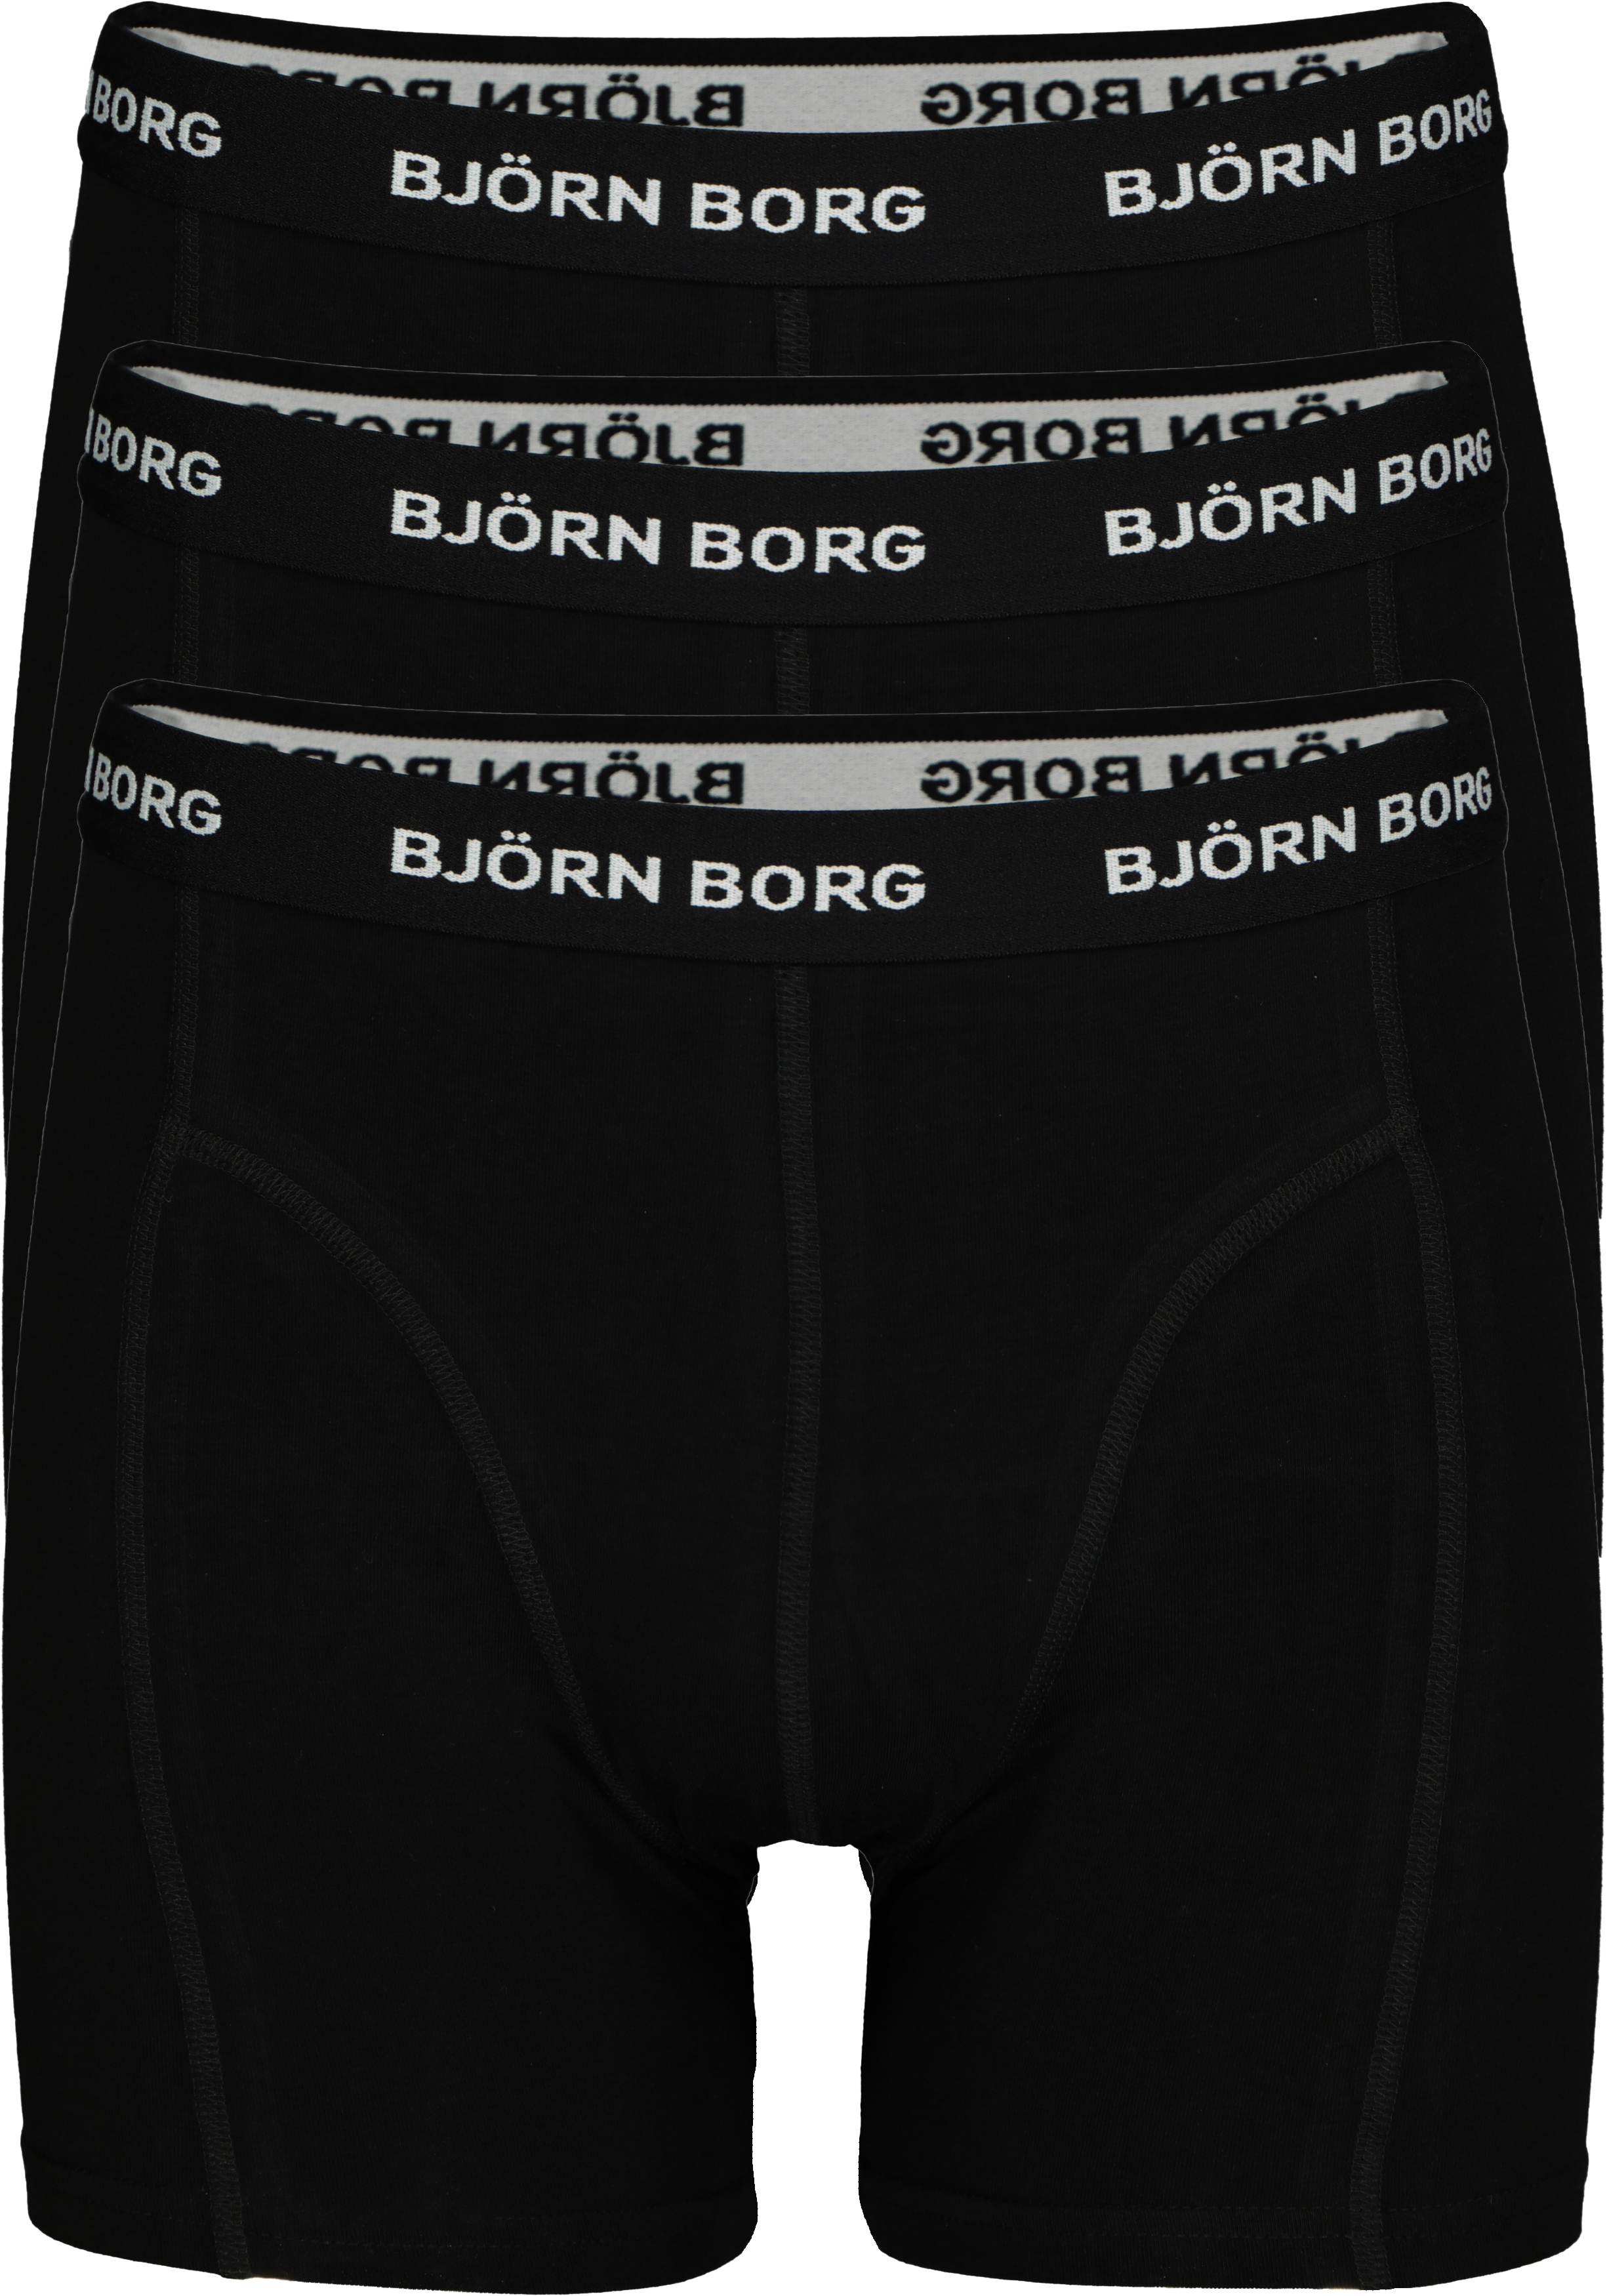 Negen Verspilling entiteit Bjorn Borg Boxers Aanbieding Shop, SAVE 39% - icarus.photos